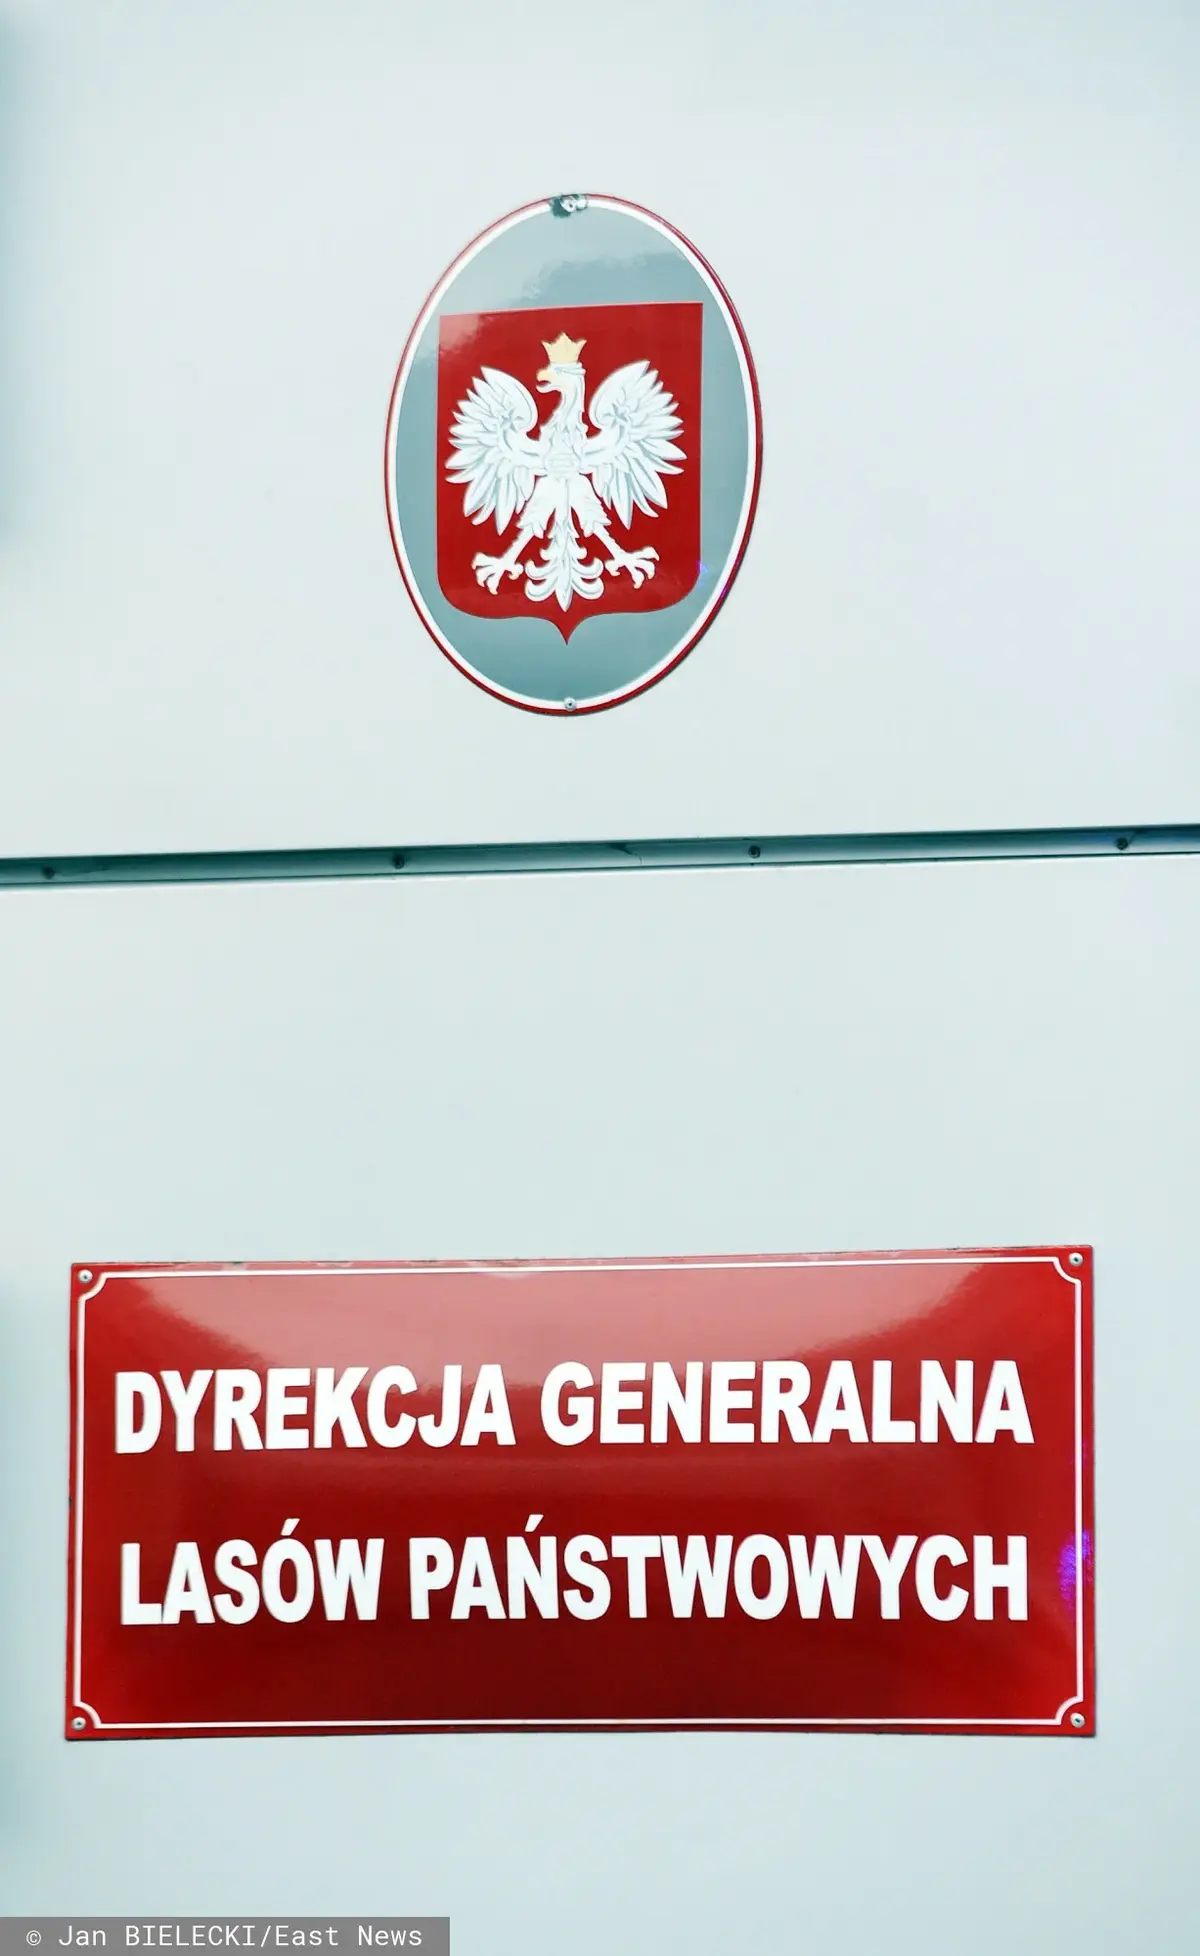 Czerwone oznaczenie Dyrekcji Generalnej Lasów Państwowych w Siedzibie Lasów Państwowych w Warszawie umieszczone pod godłem RP